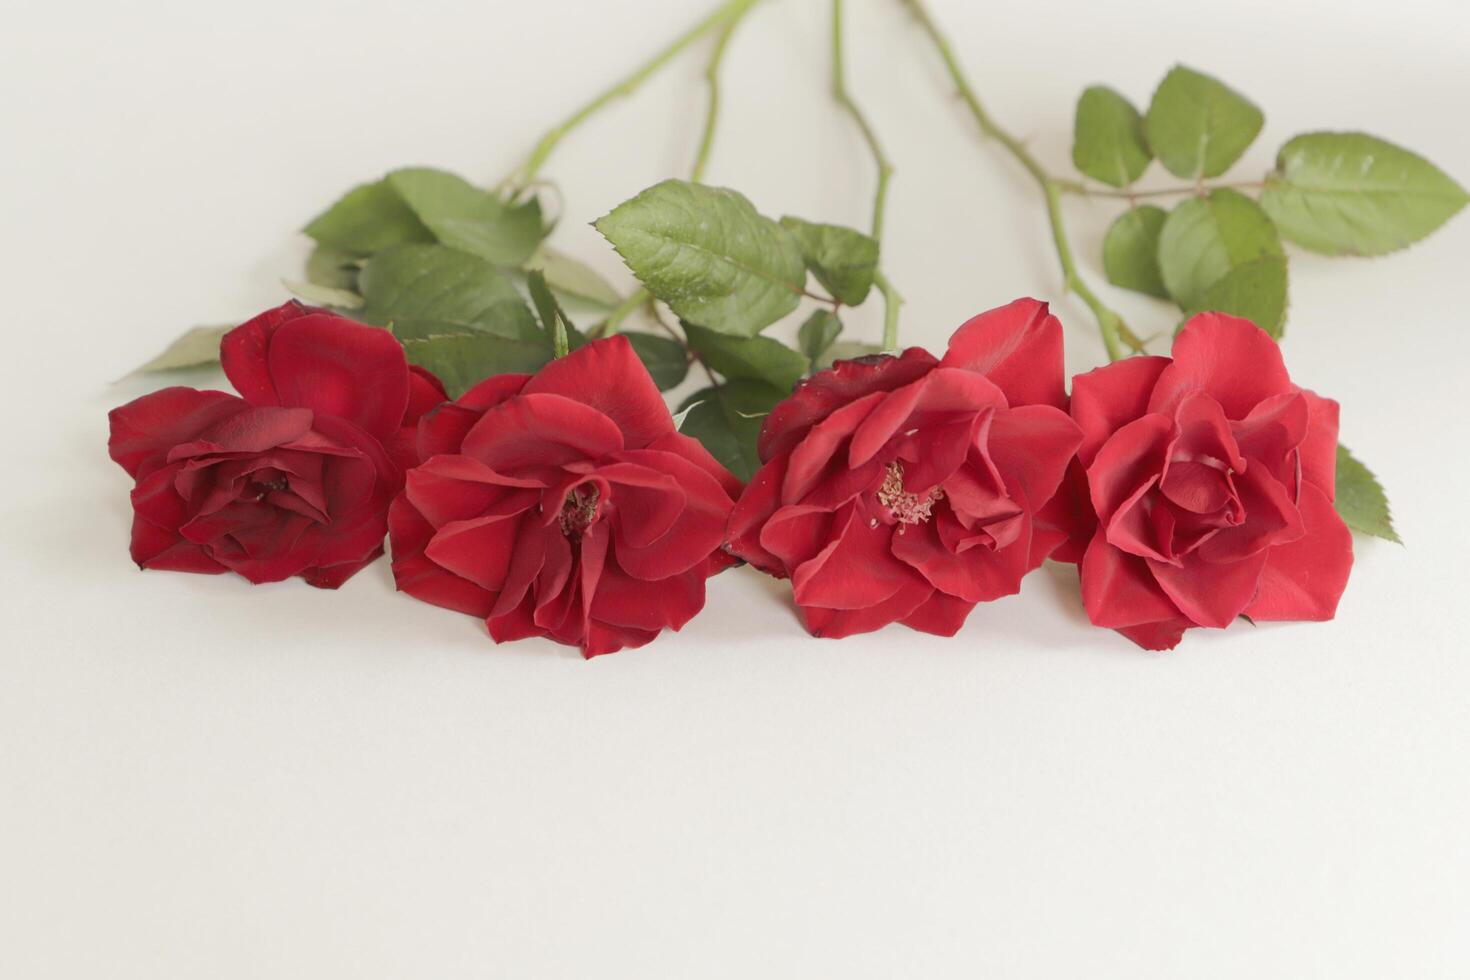 rood rozen liggen Aan een wit papier foto